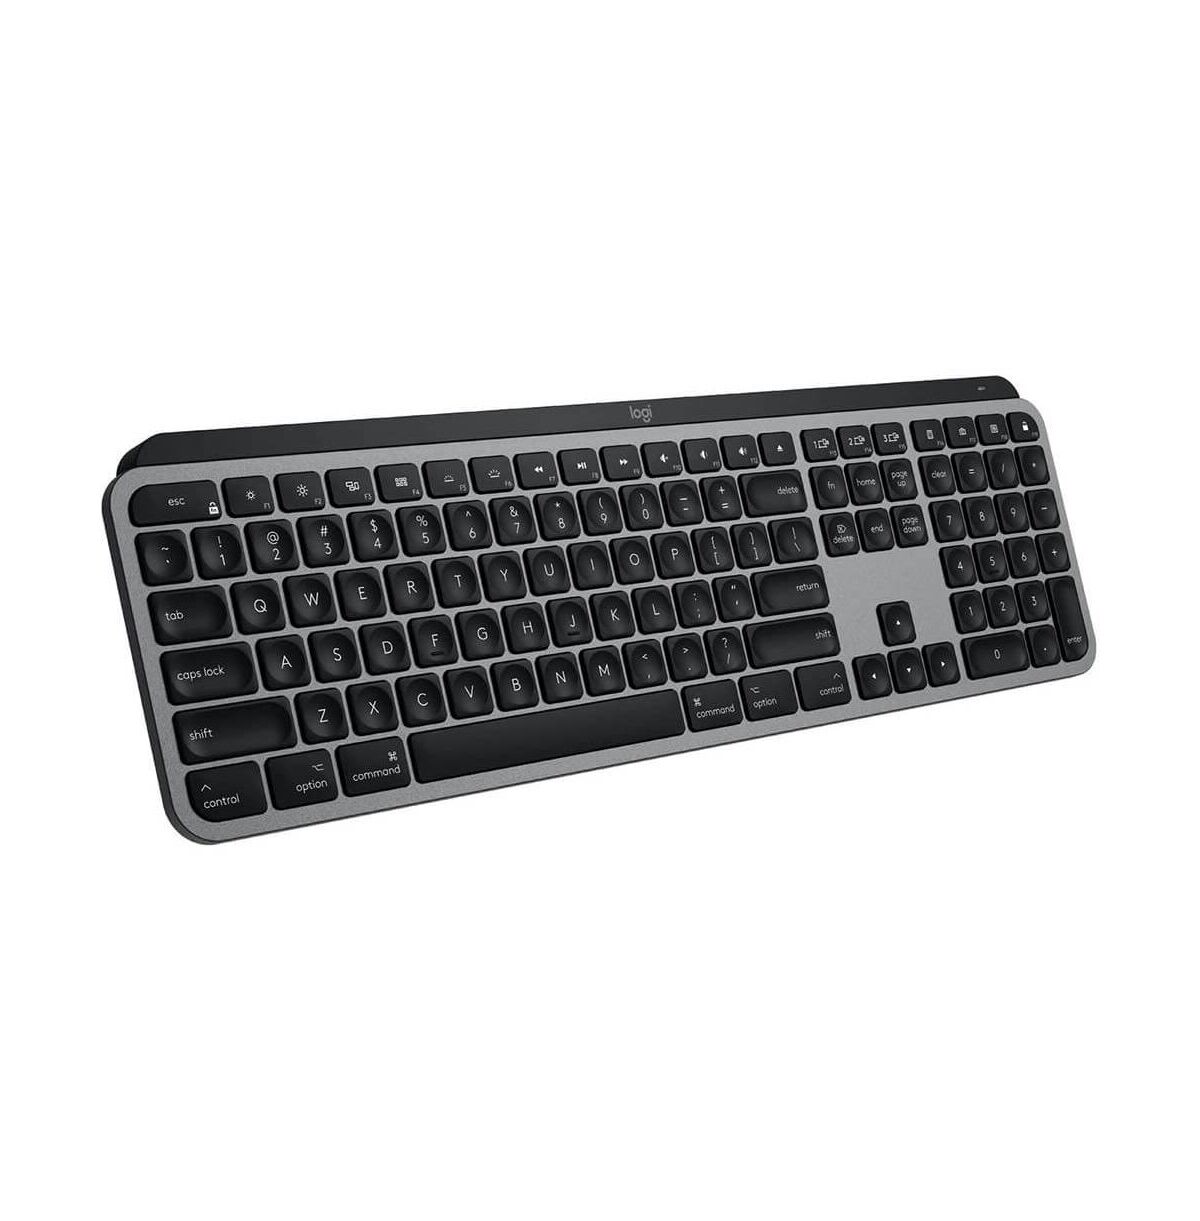 Logitech Mx Keys Wireless Keyboard for Mac - Black